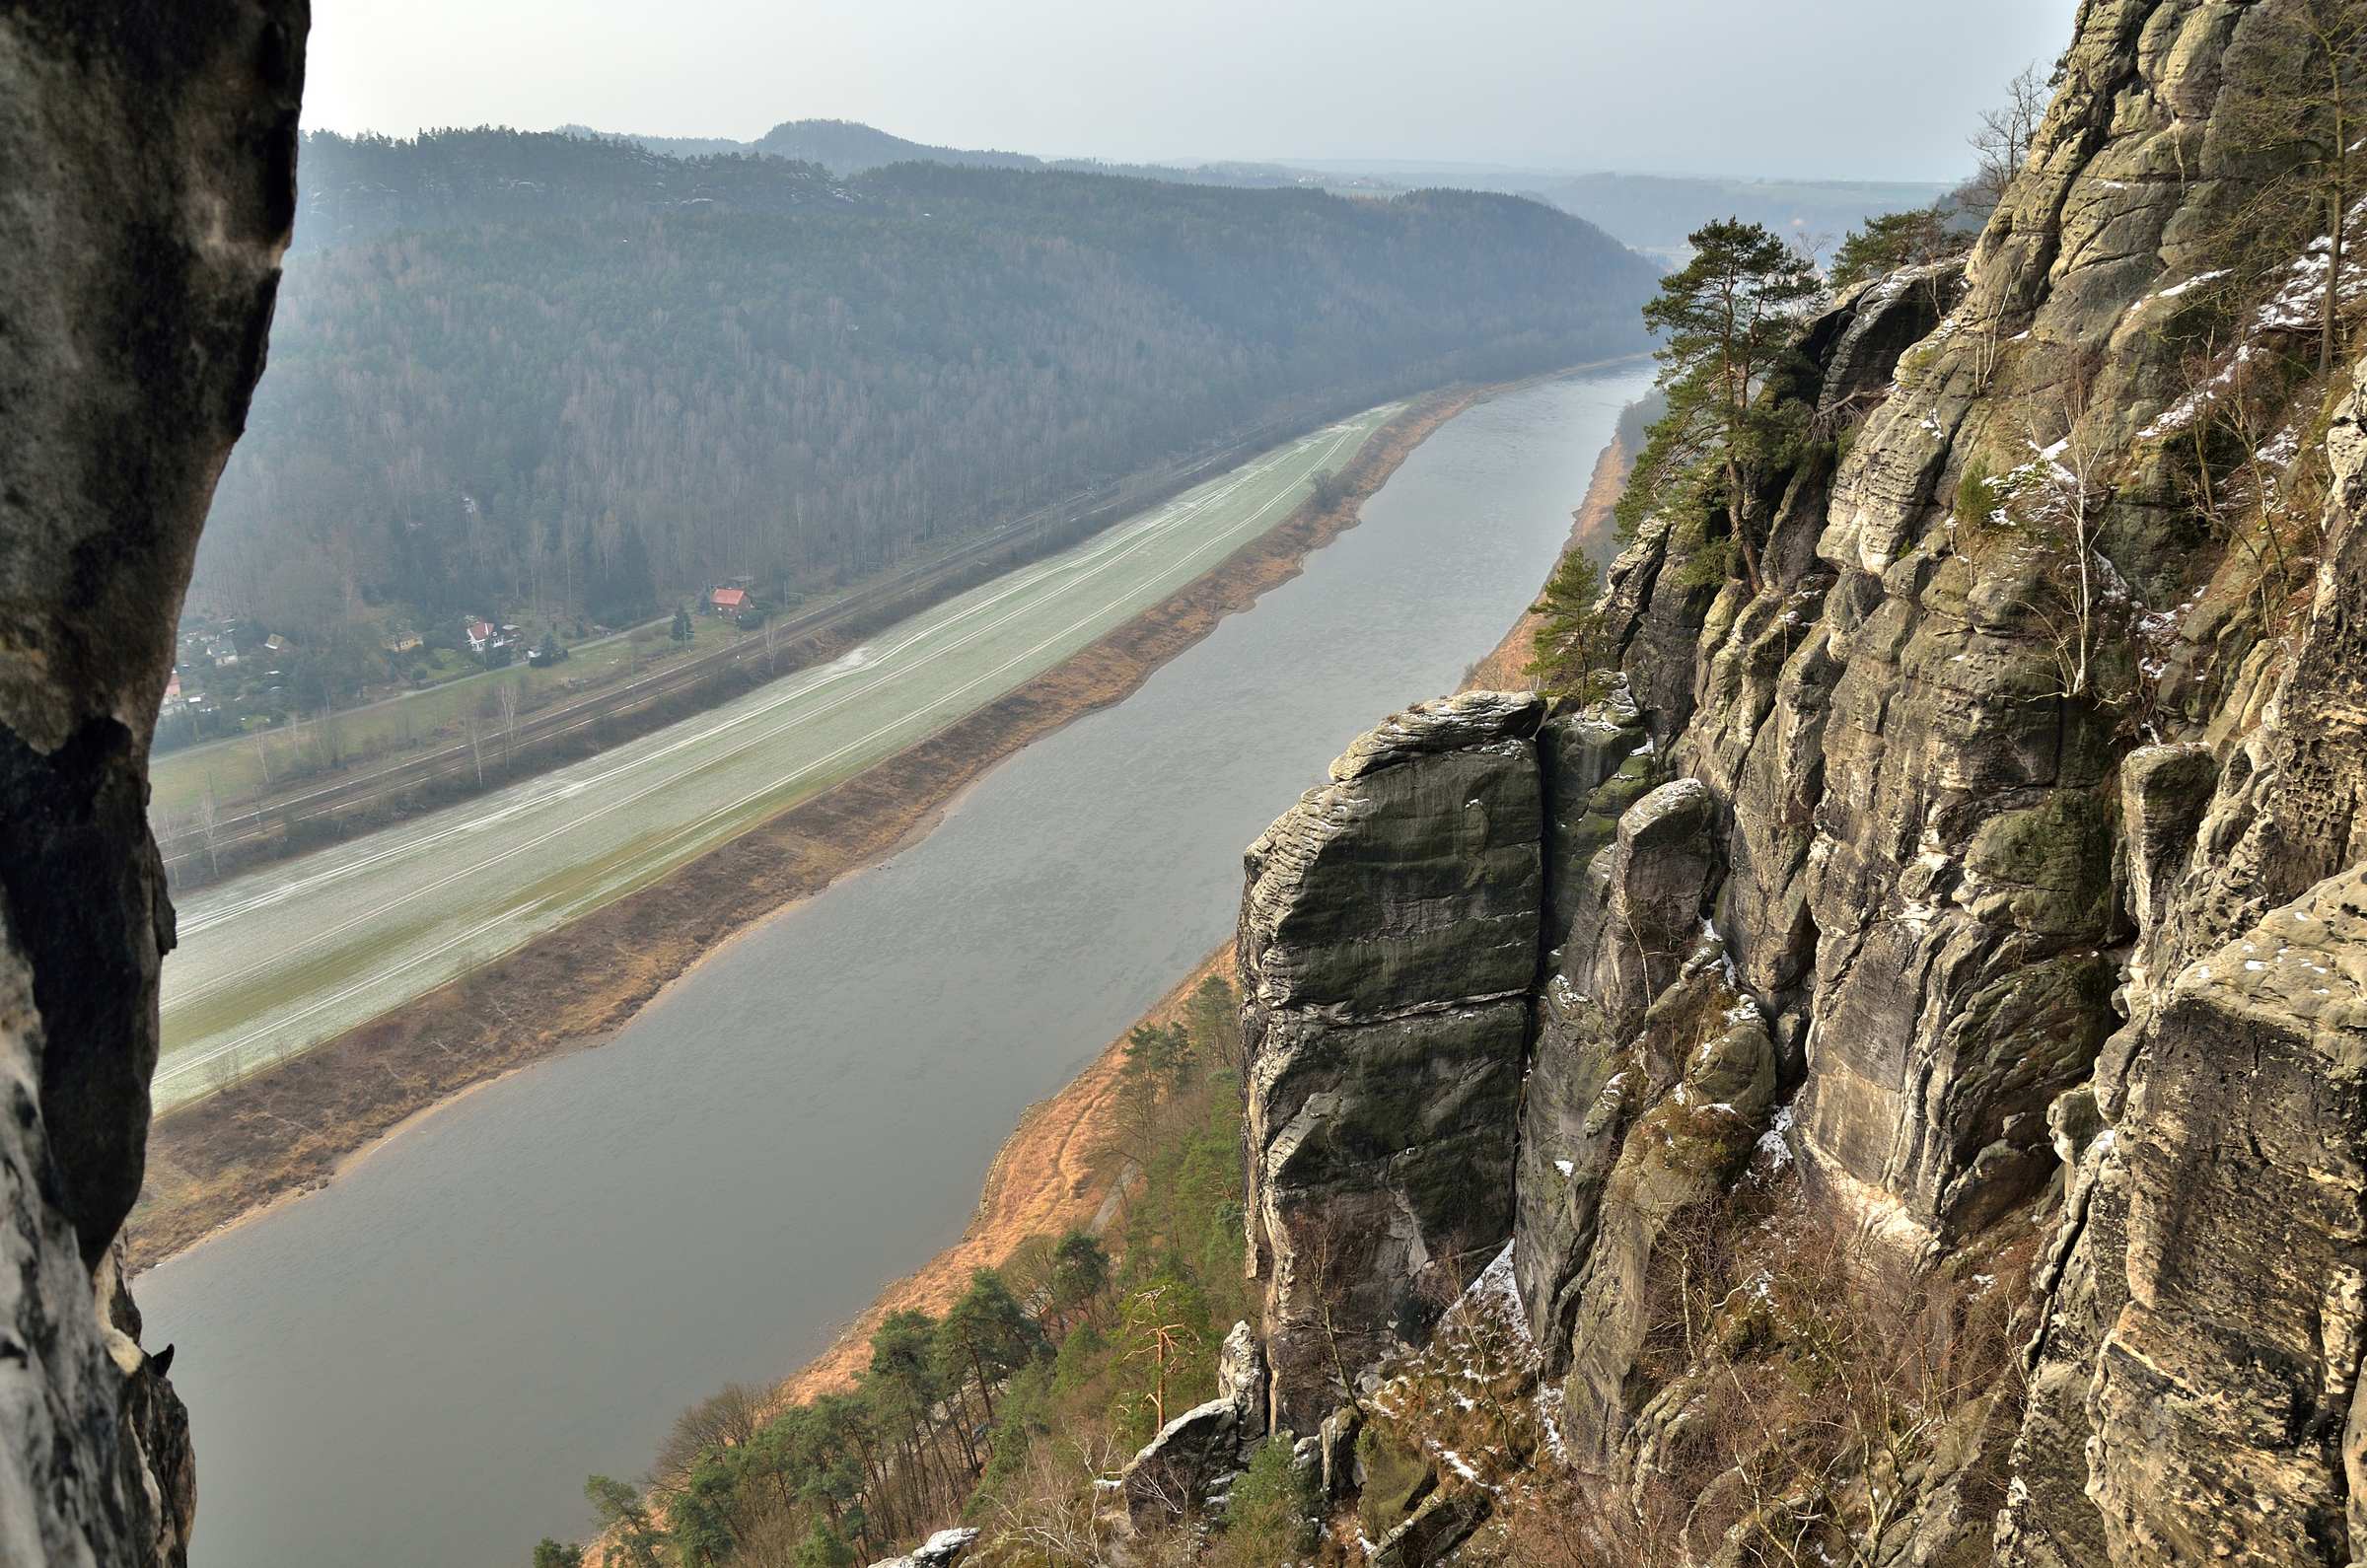 Река Эльба со смотровой площадки Бастайского скального массива в Саксонской Швейцарии.